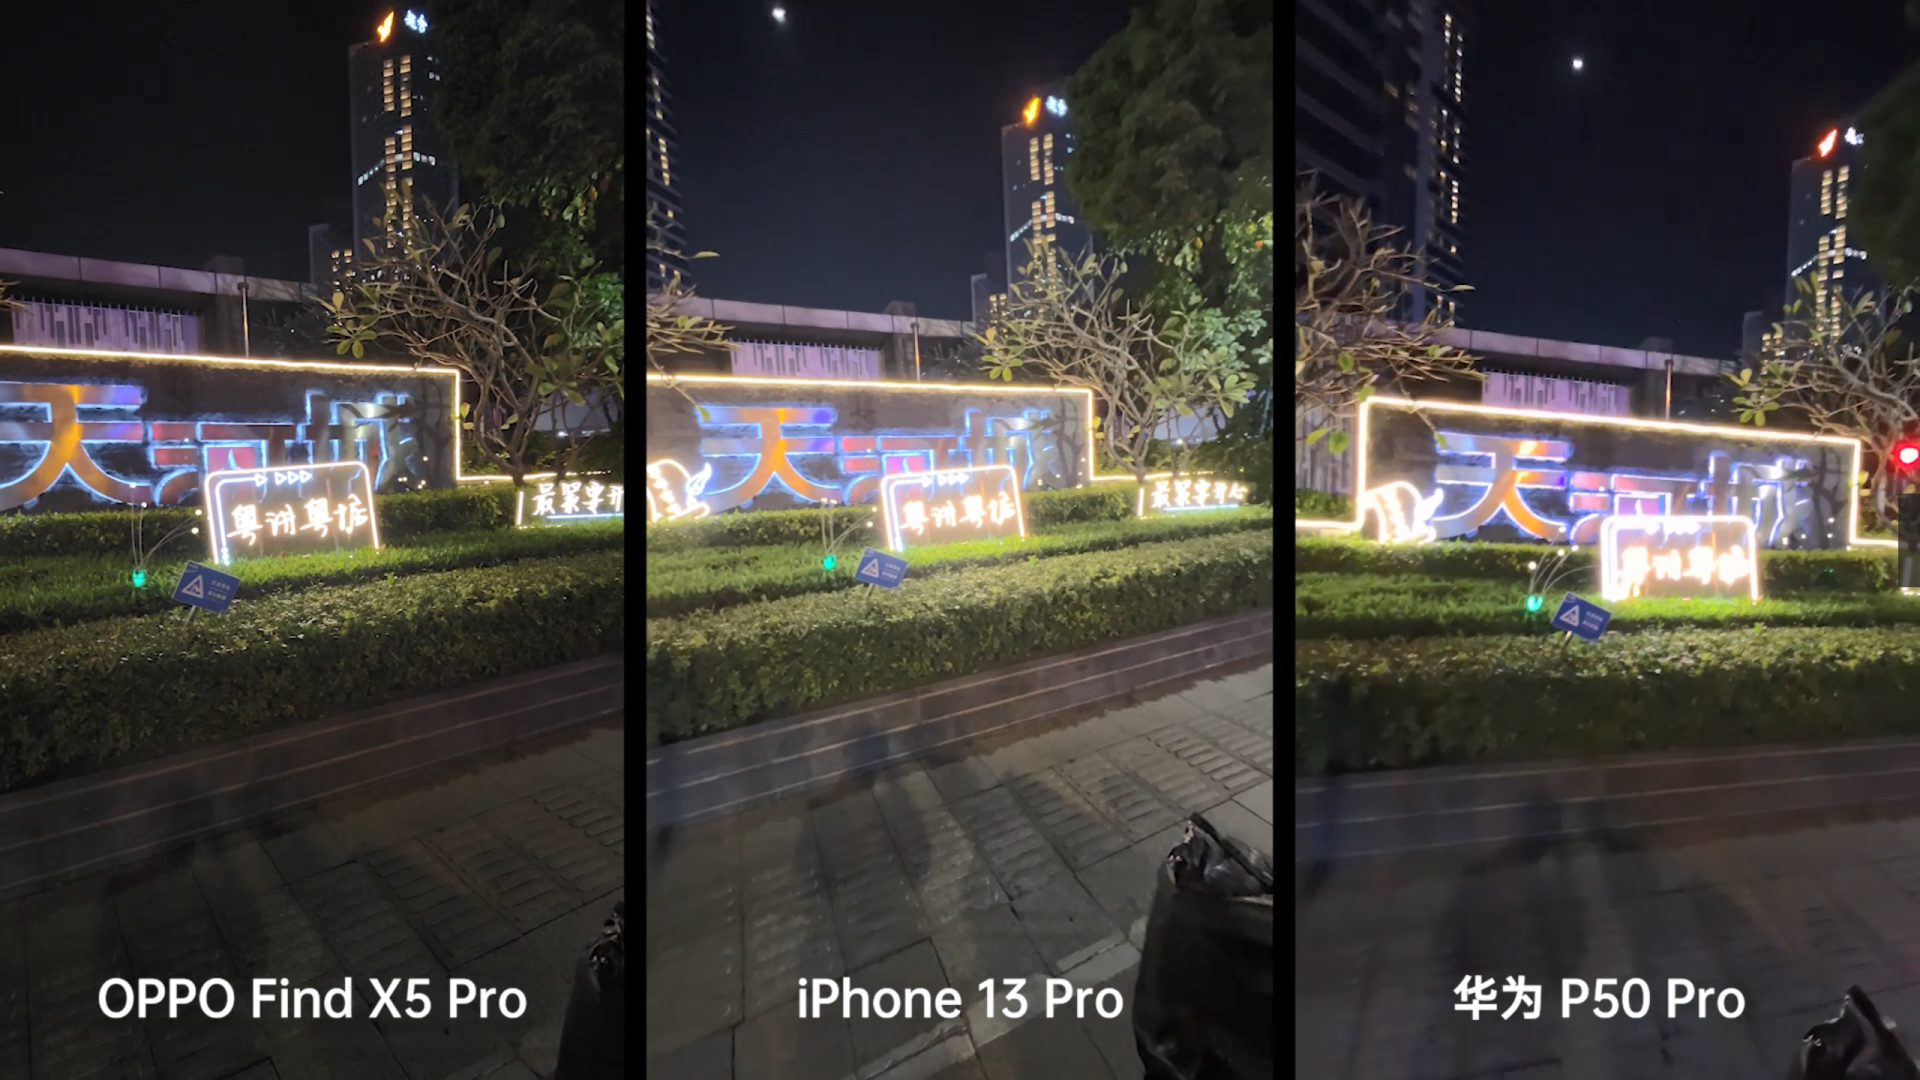 iPhone|国产影像旗舰打破视频壁垒，与iPhone13 Pro的对比优势明显